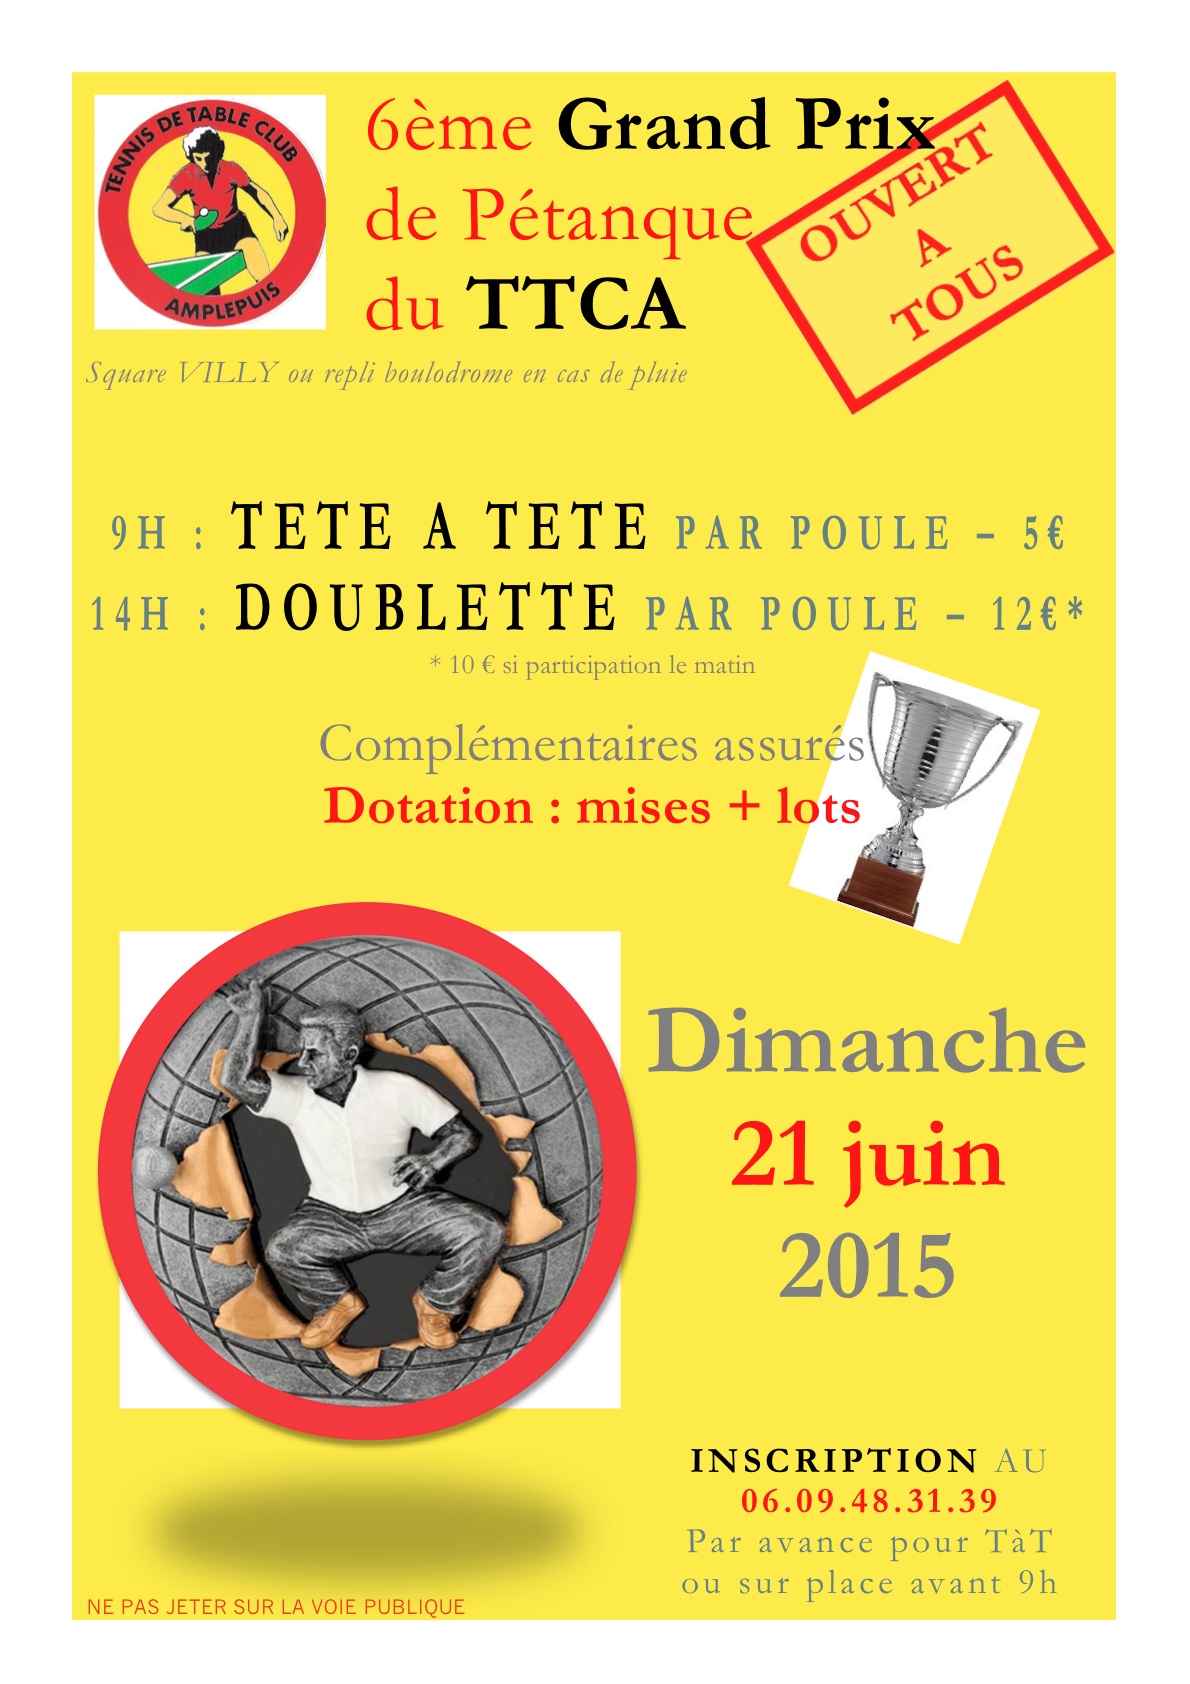 Concours dimanche 21 juin 2015 TTC Amplepuis